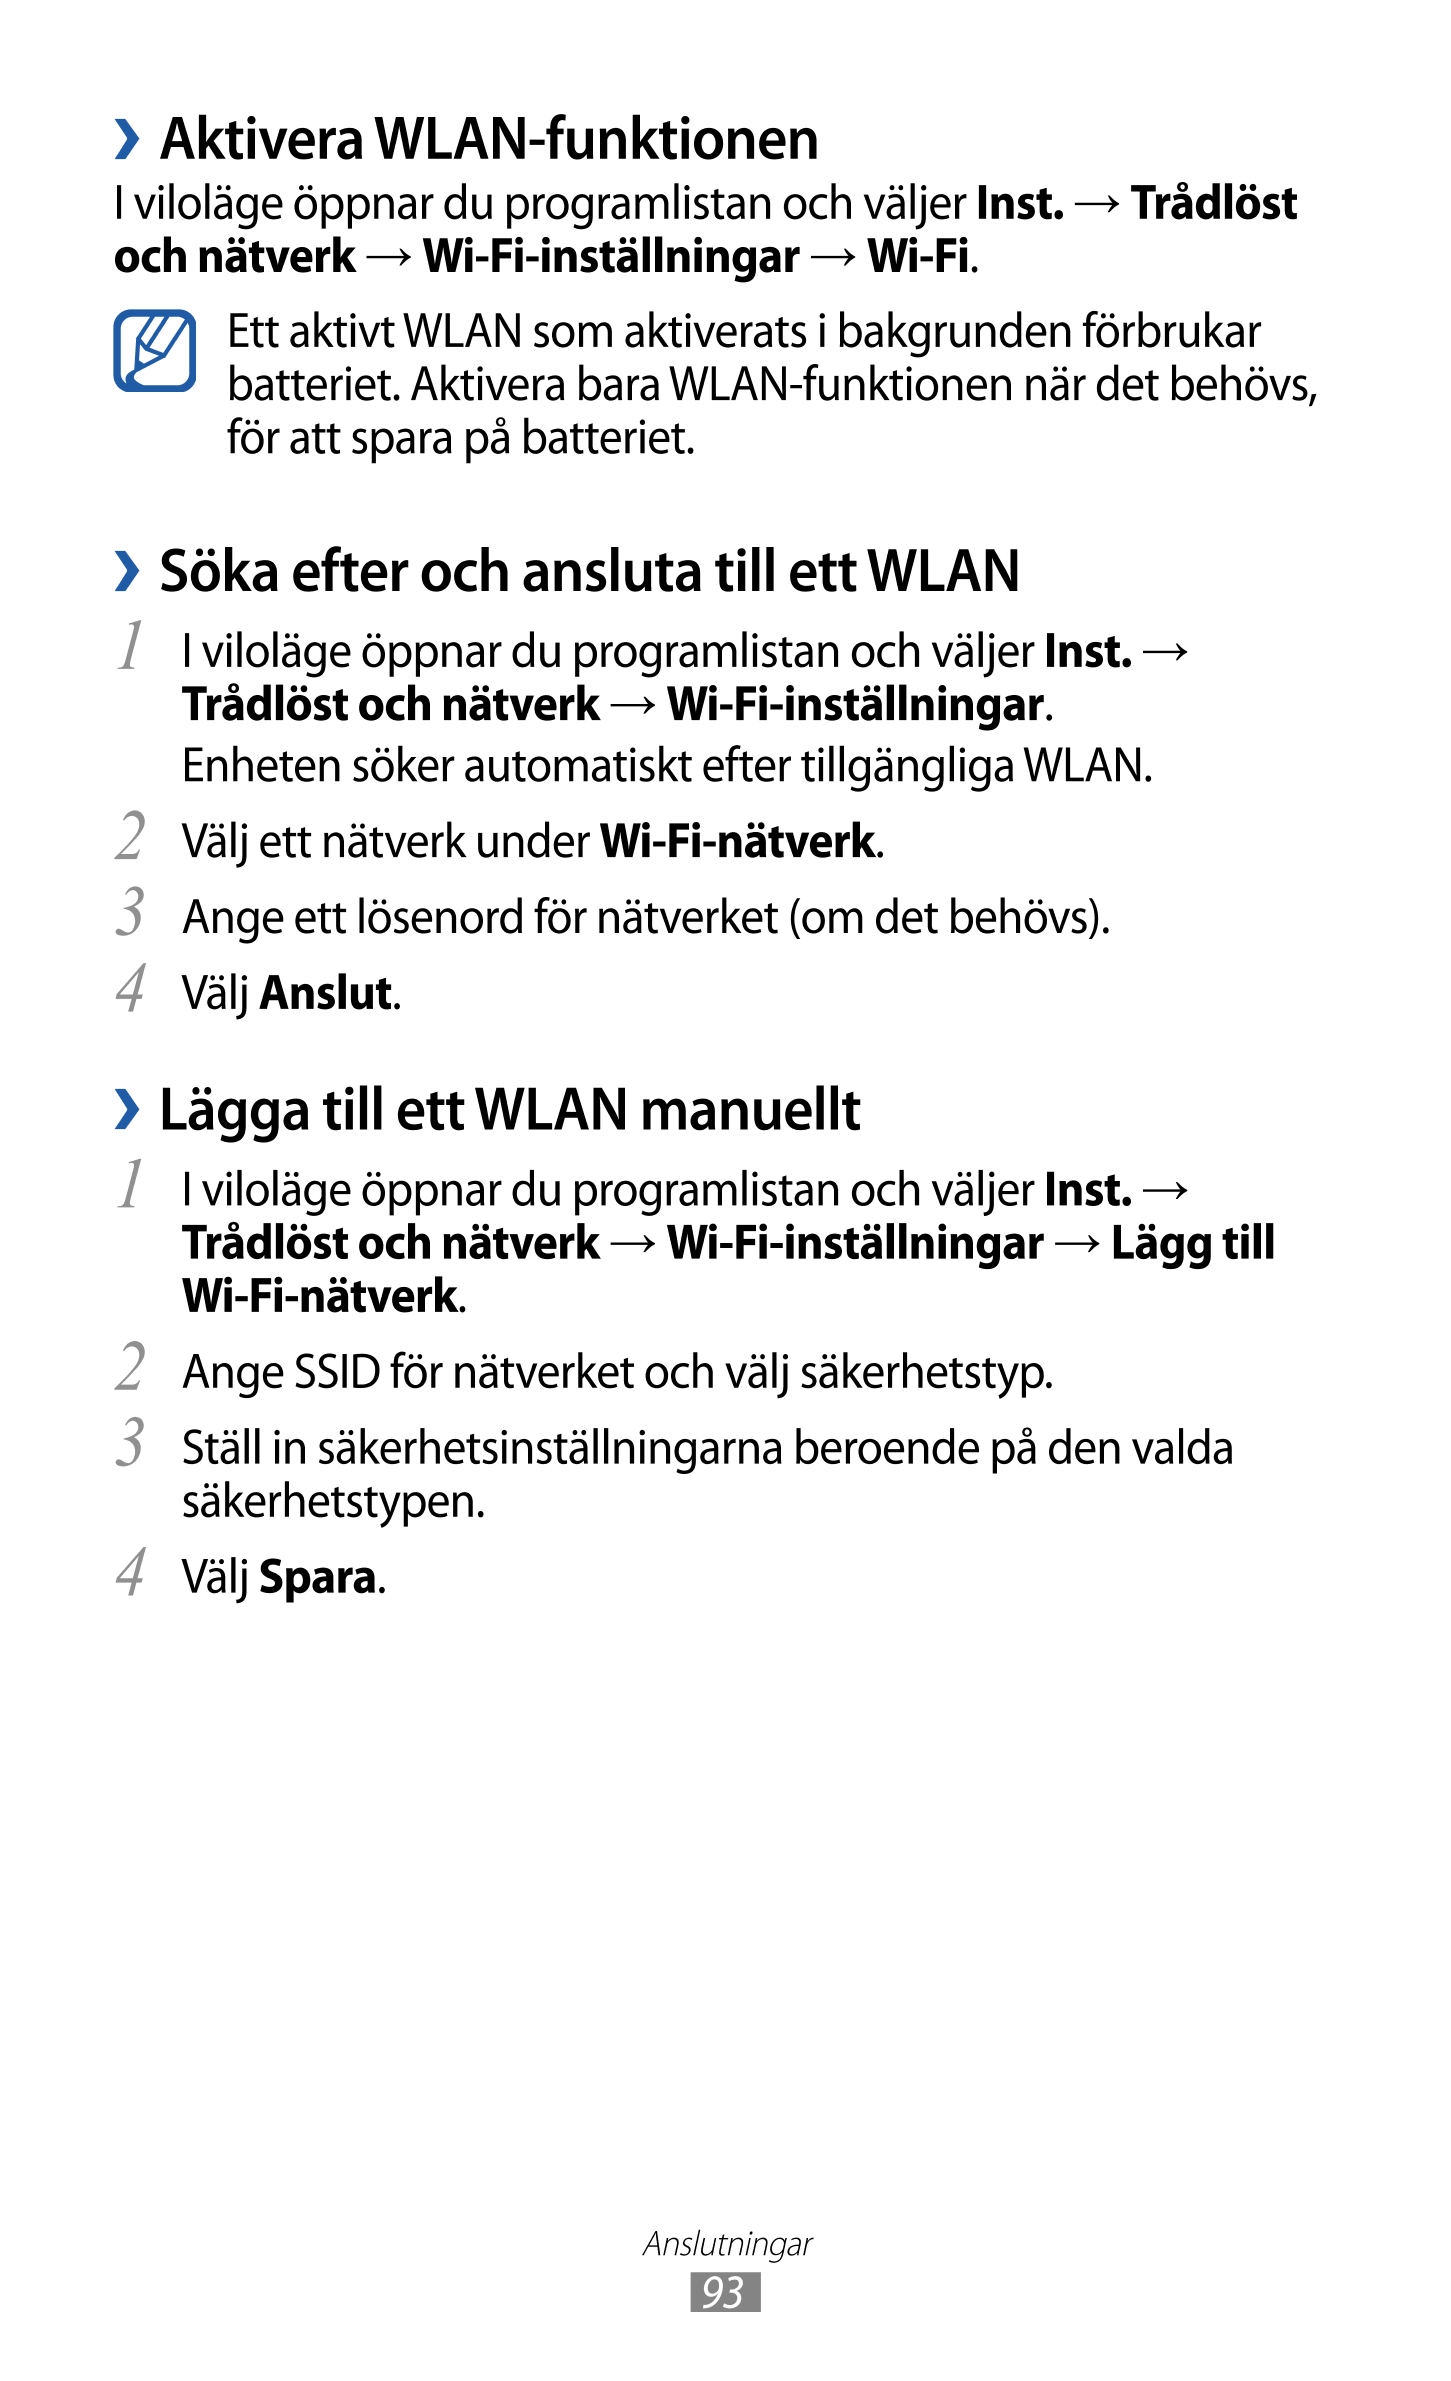 › Aktivera WLAN-funktionen
I viloläge öppnar du programlistan och väljer  Inst.  →  Trådlöst 
och nätverk  →  Wi-Fi-inställninga